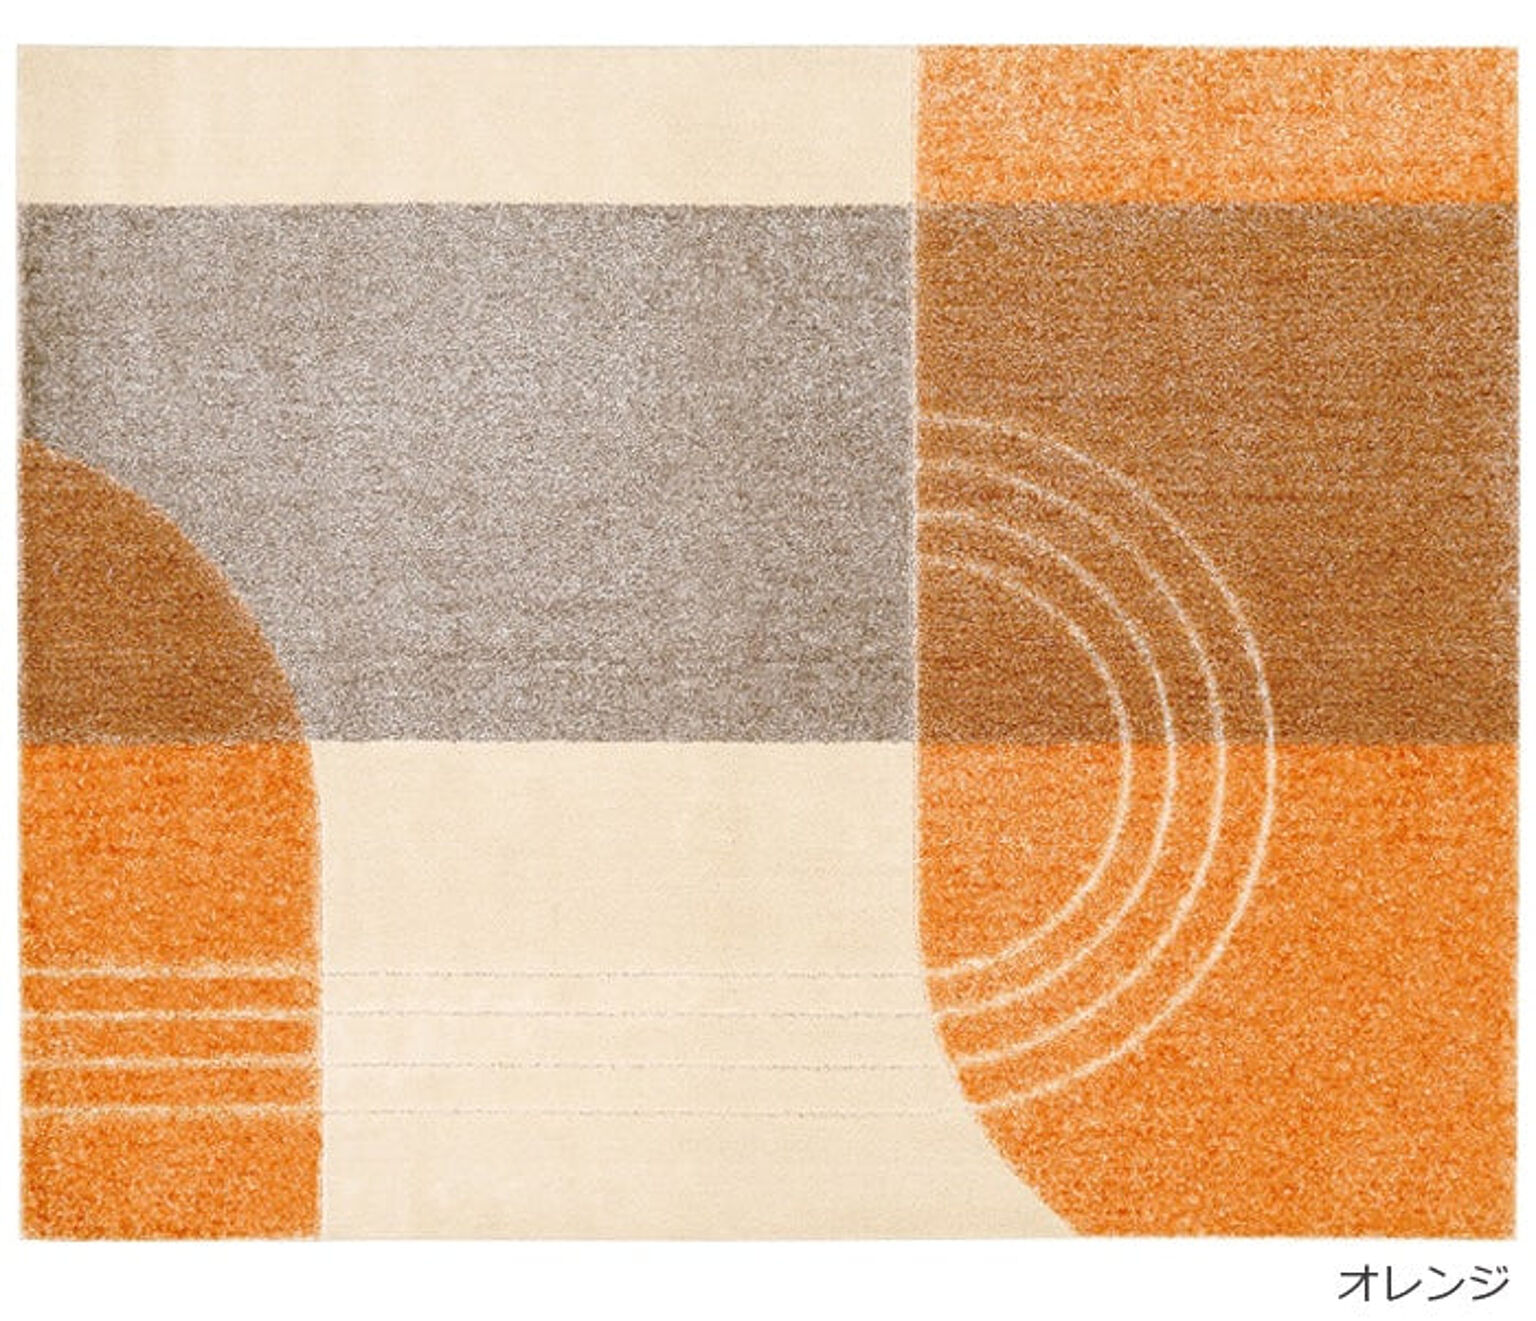 日本製 ラグマット/絨毯 〔約190×240cm イエロー〕 ホットカーペット対応 手洗い可 『アイナ』 プレーベル〔〕 カーペット、ラグ